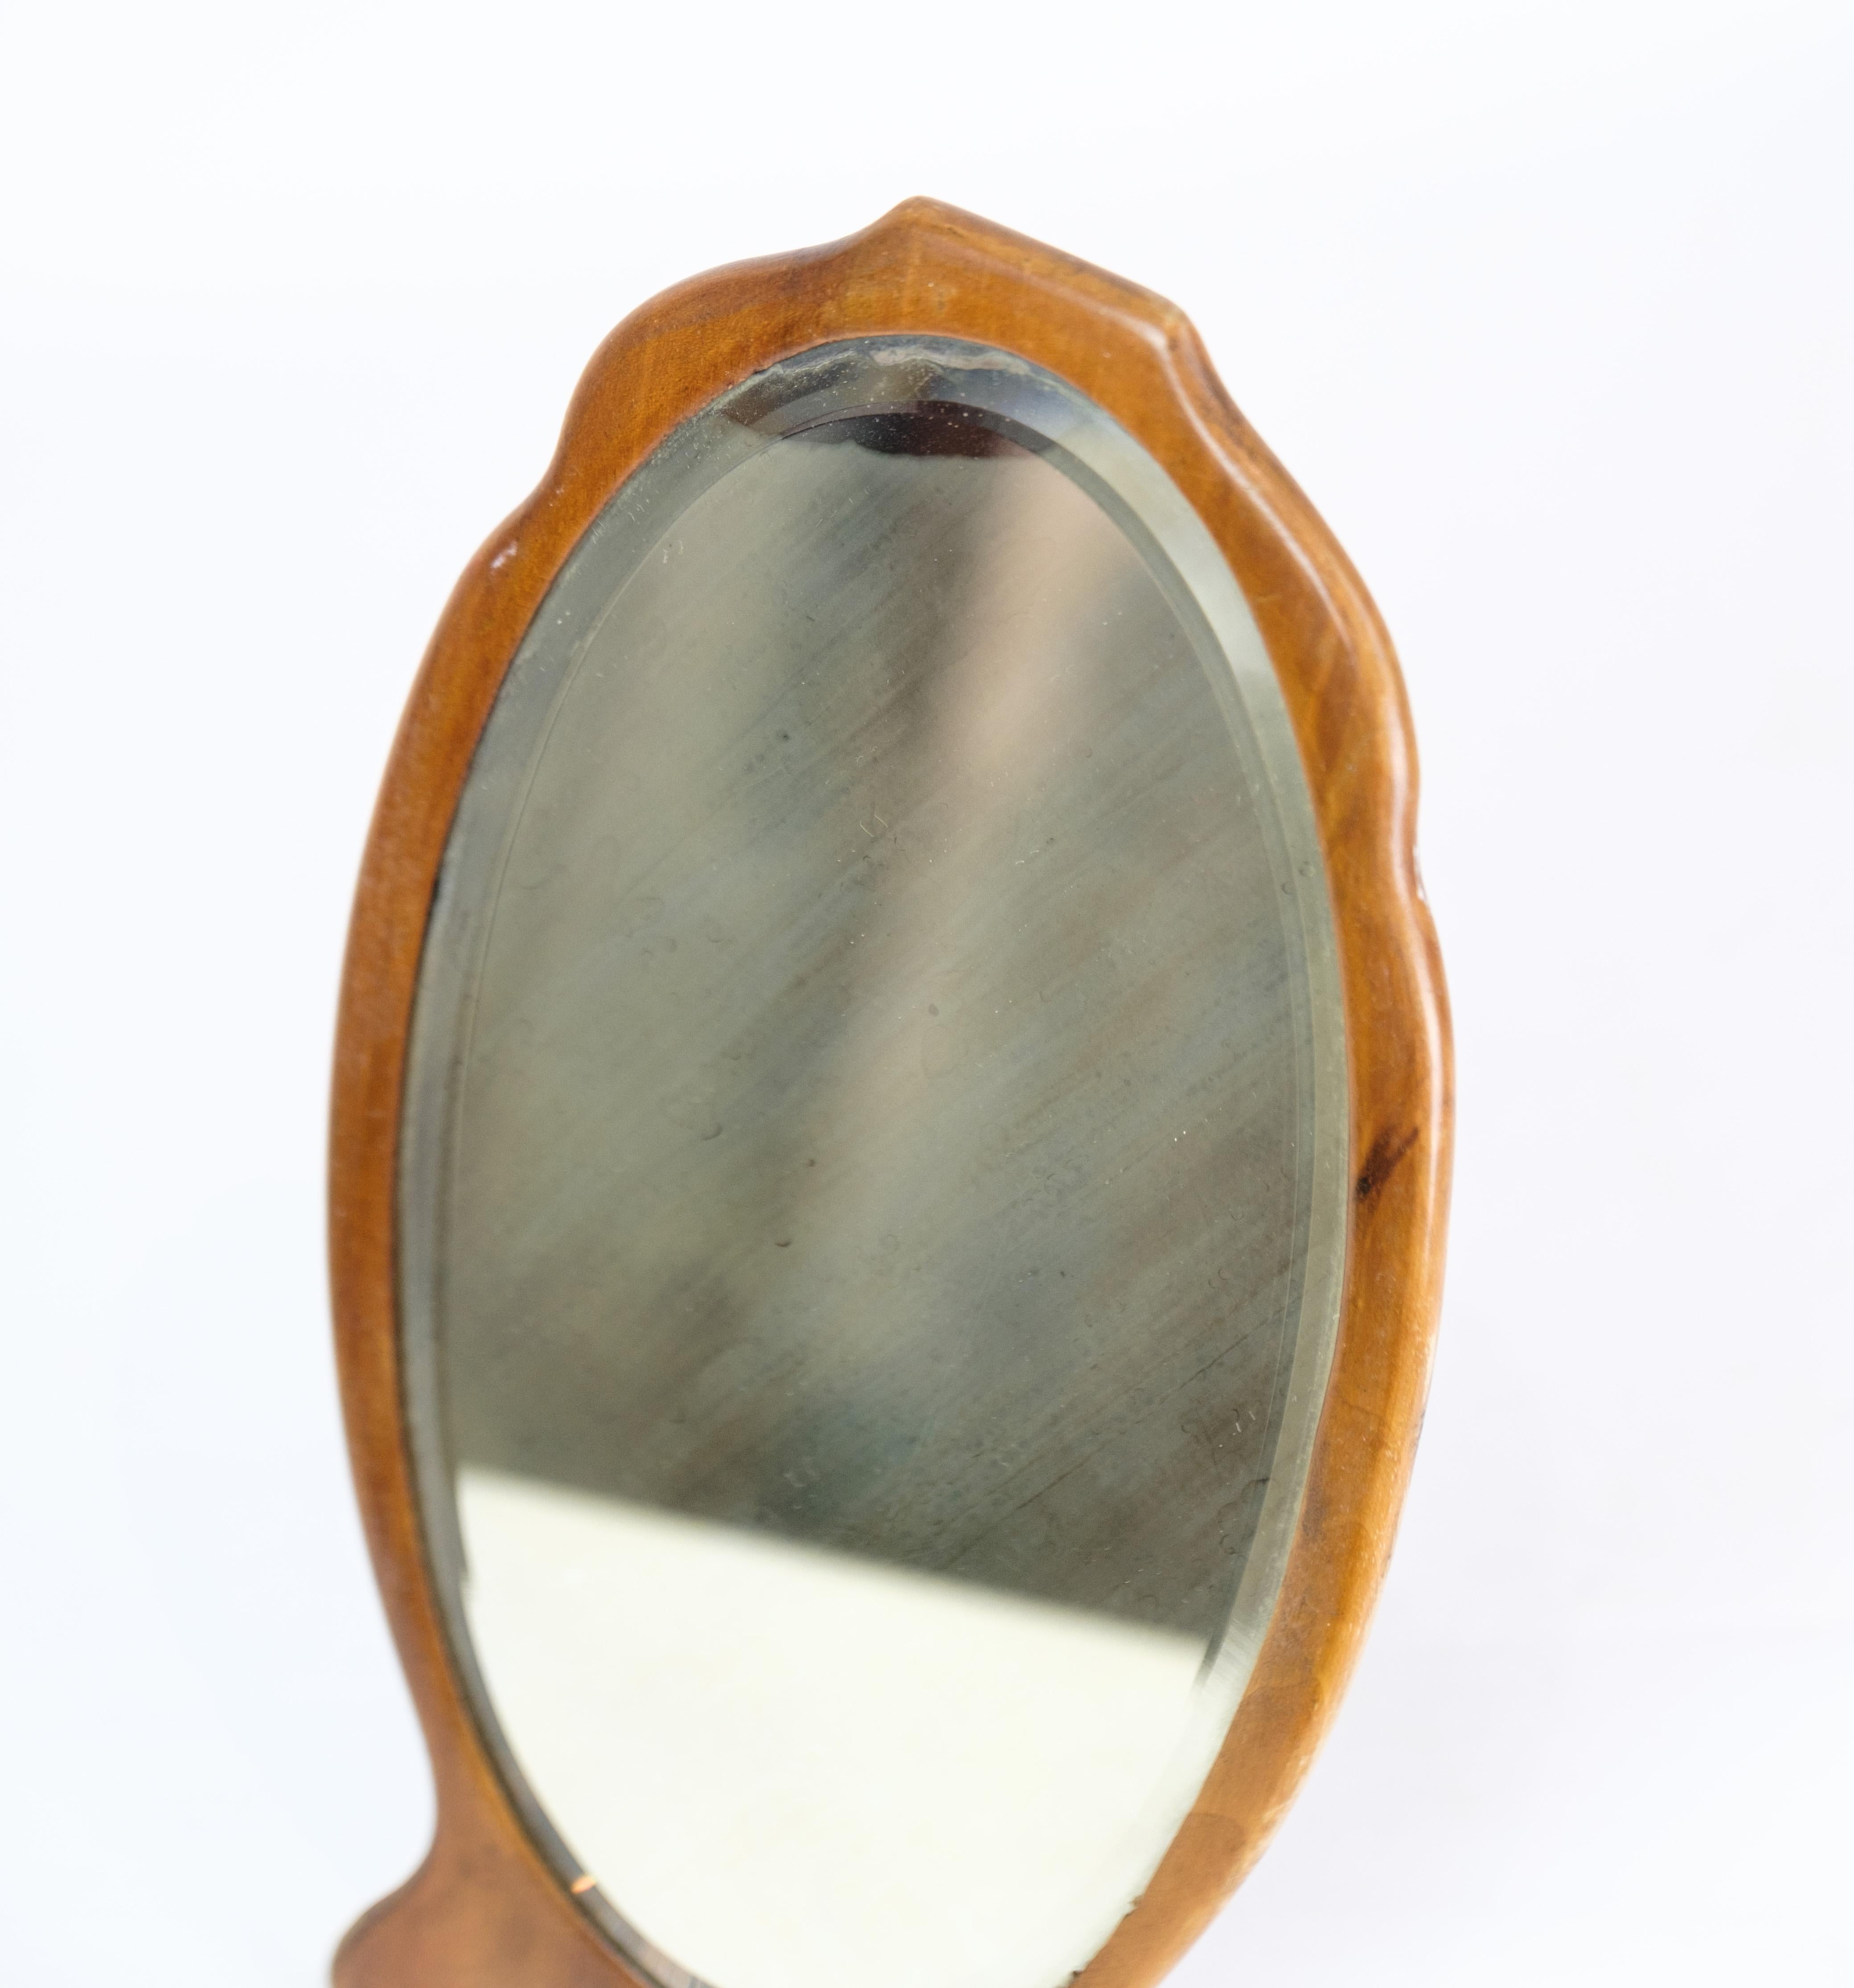 Petit miroir de table en bois de noyer avec petit pied en métal datant des années 1880 environ.
Dimensions en cm : H:30 L:15,5